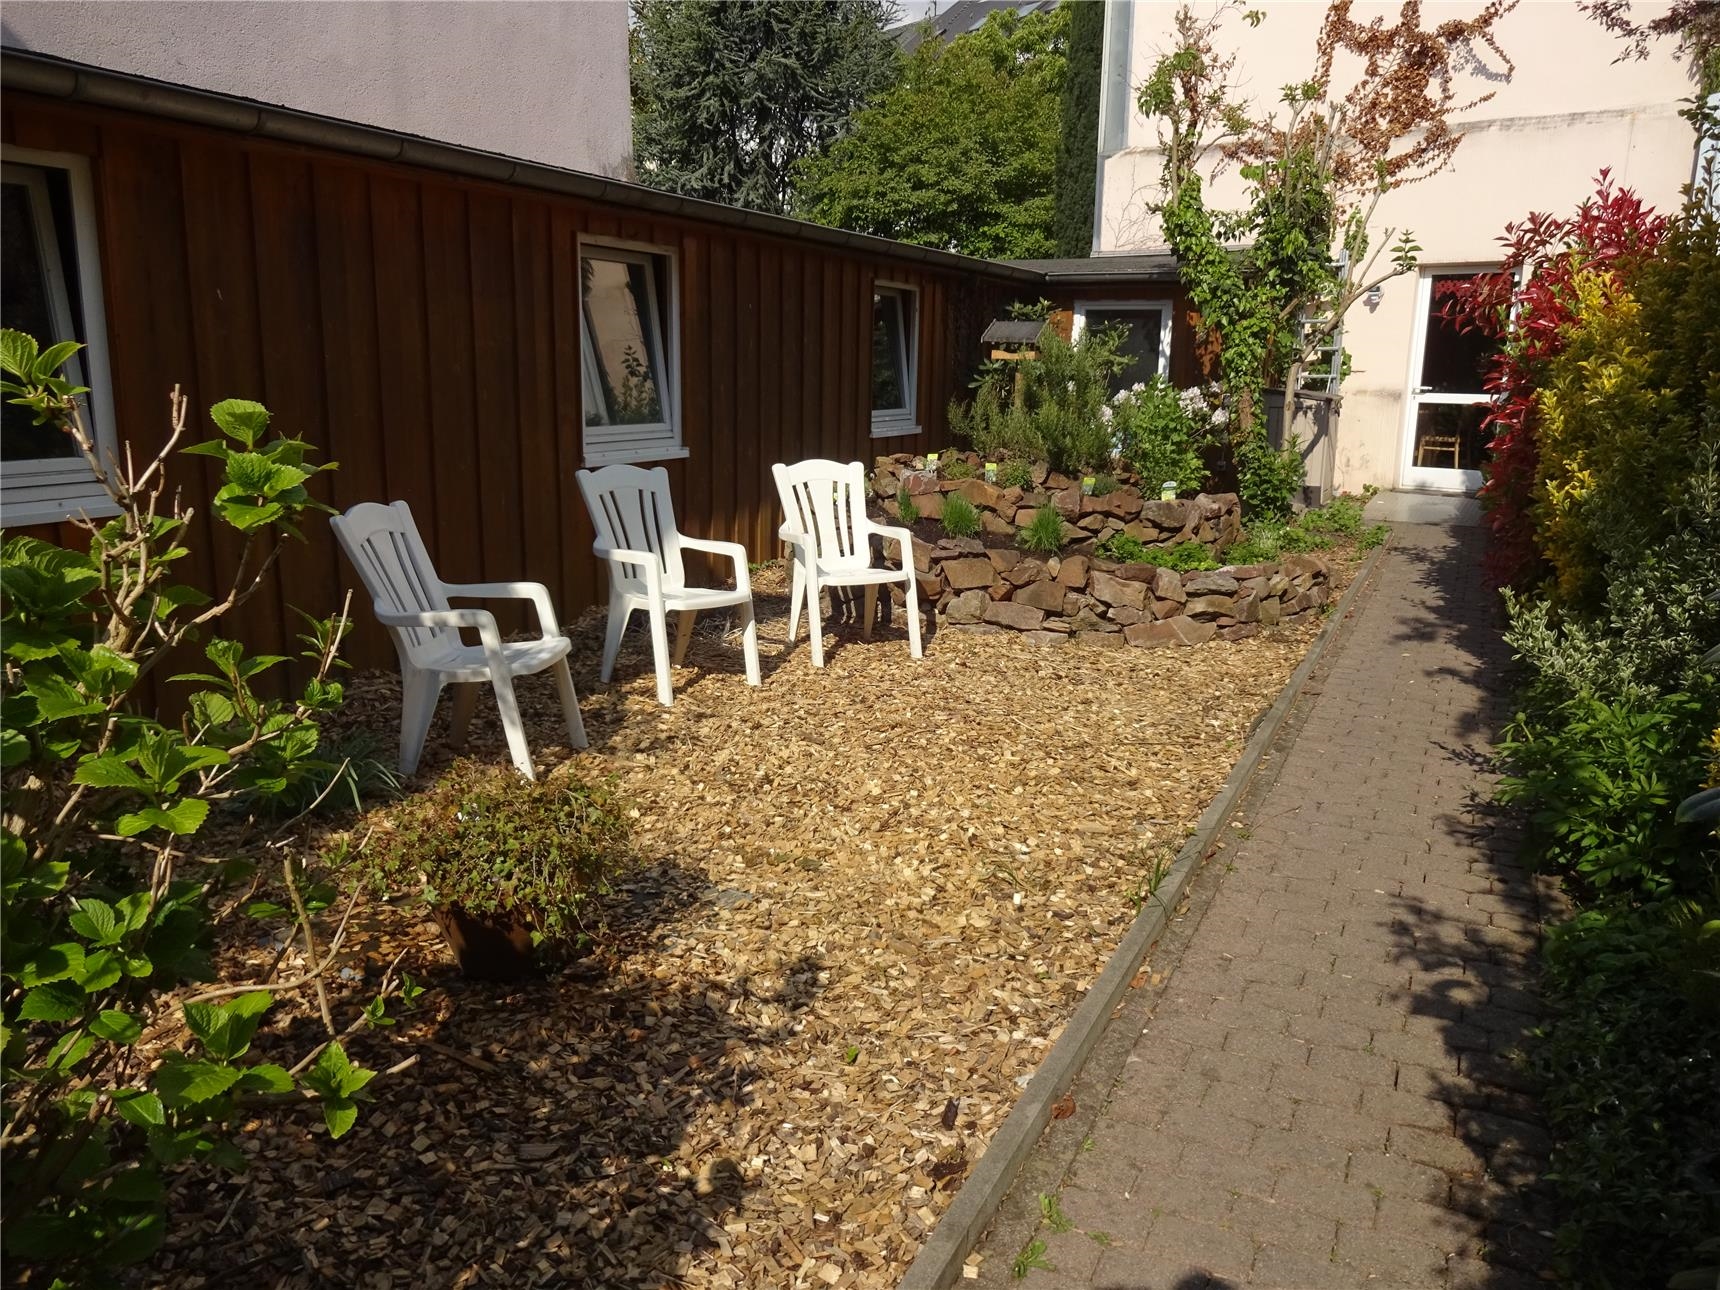 Drei Stühle in einem Hof auf einem kleinen mit Rindenmulch bedeckten Platz, links und rechts Büsche, daneben ein Kräuterbeet. (Tagesstätte St. Maximin/Caritasverband Trier e. V.)